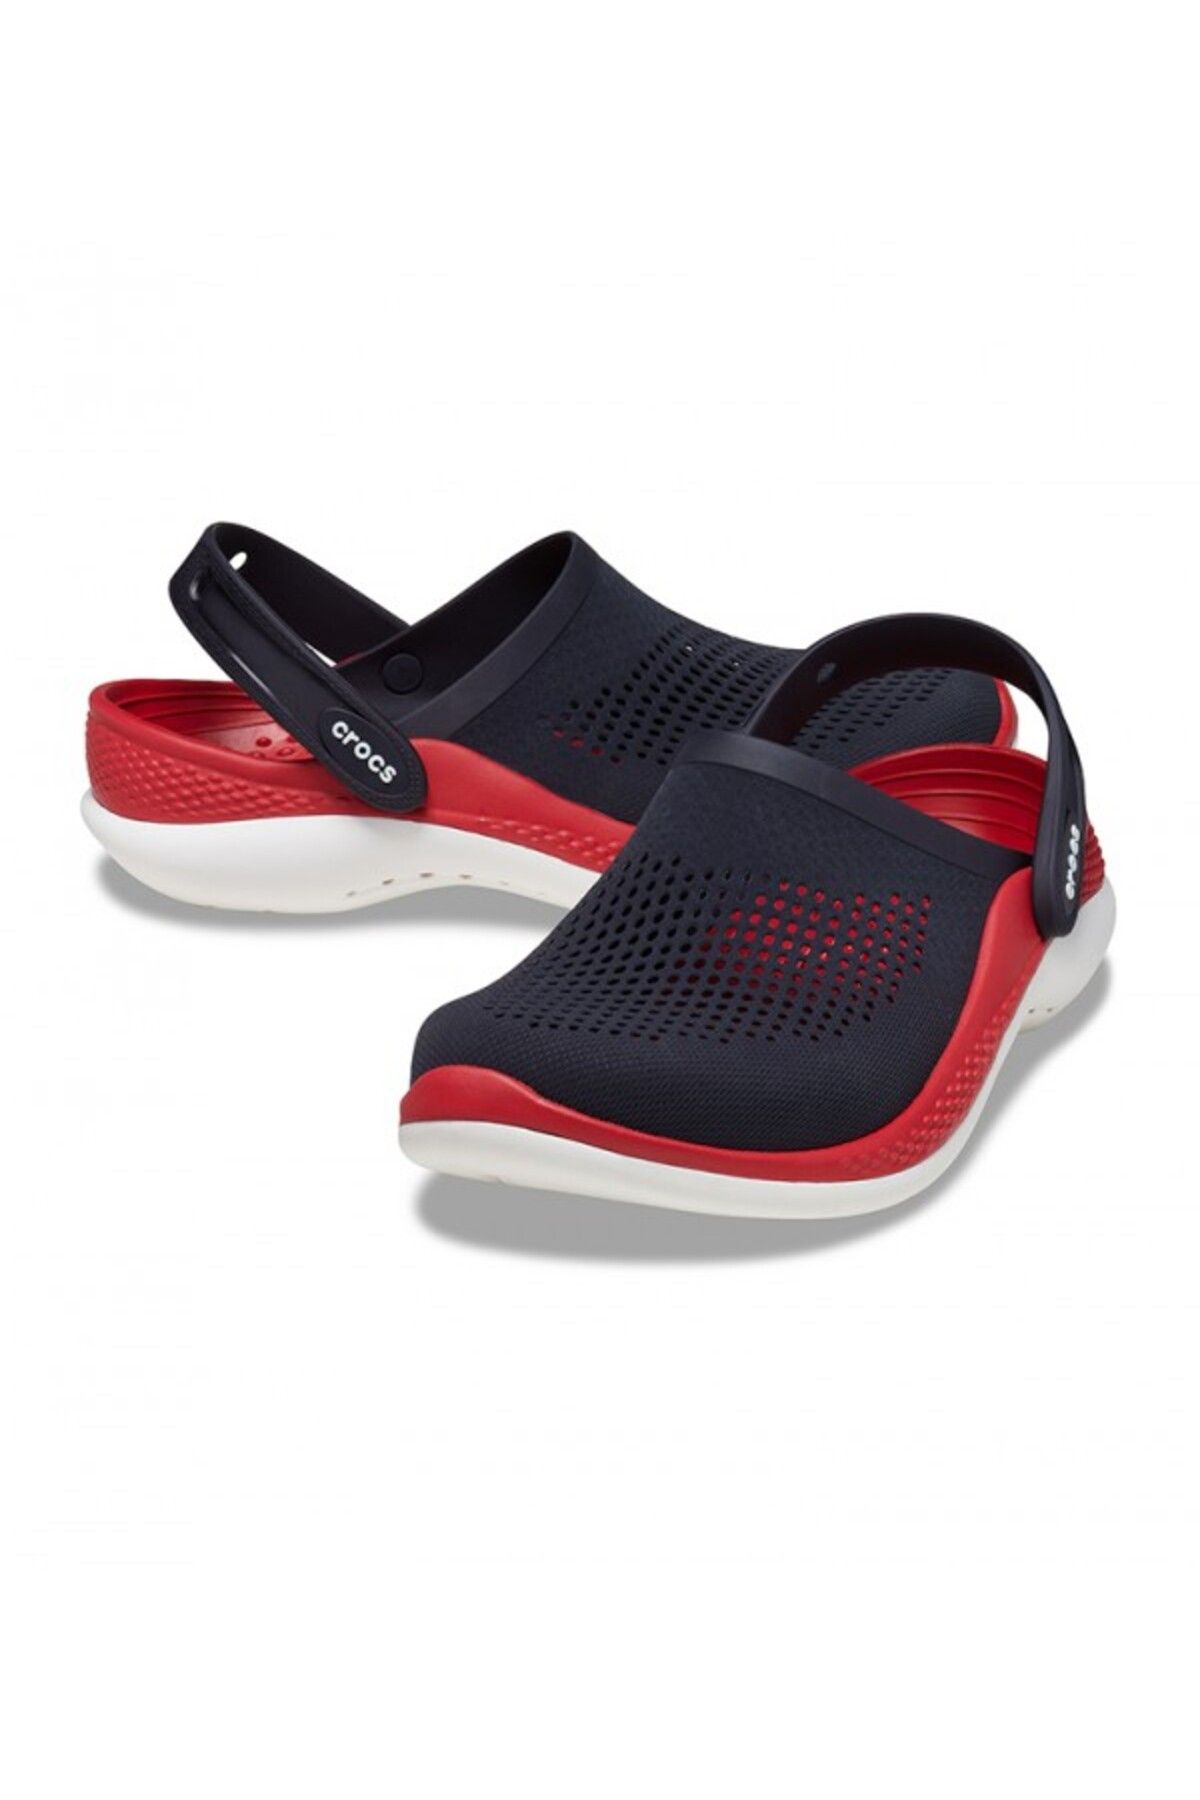 Crocs 206708-4CC Linder 360 Clog Unisex Sandals